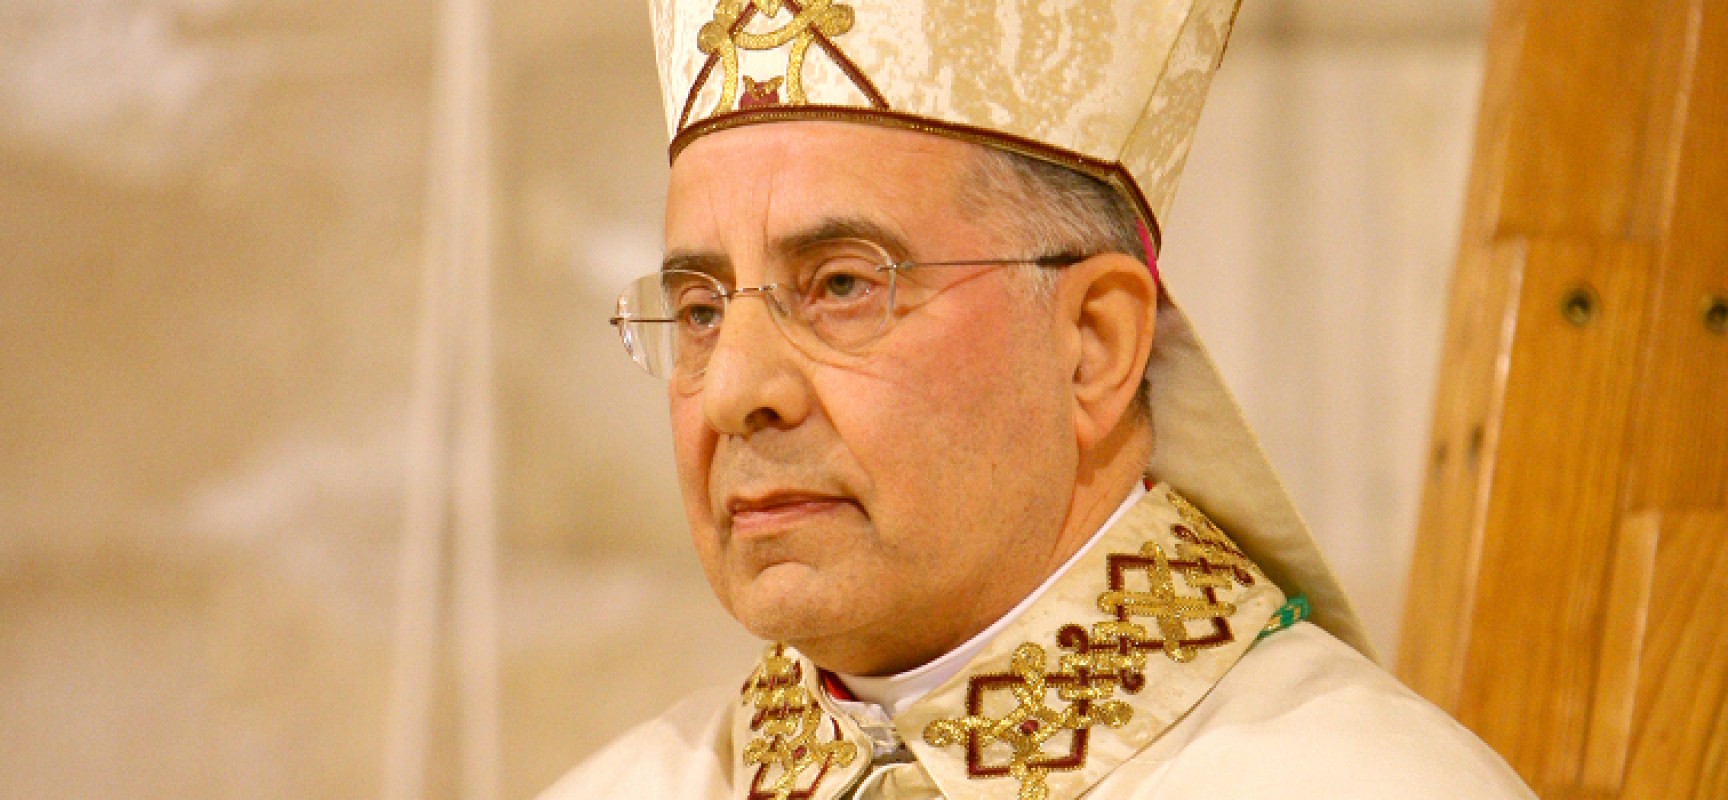 “Misericordia nella società”, gli auguri dell’Arcivescovo Giovan Battista Pichierri